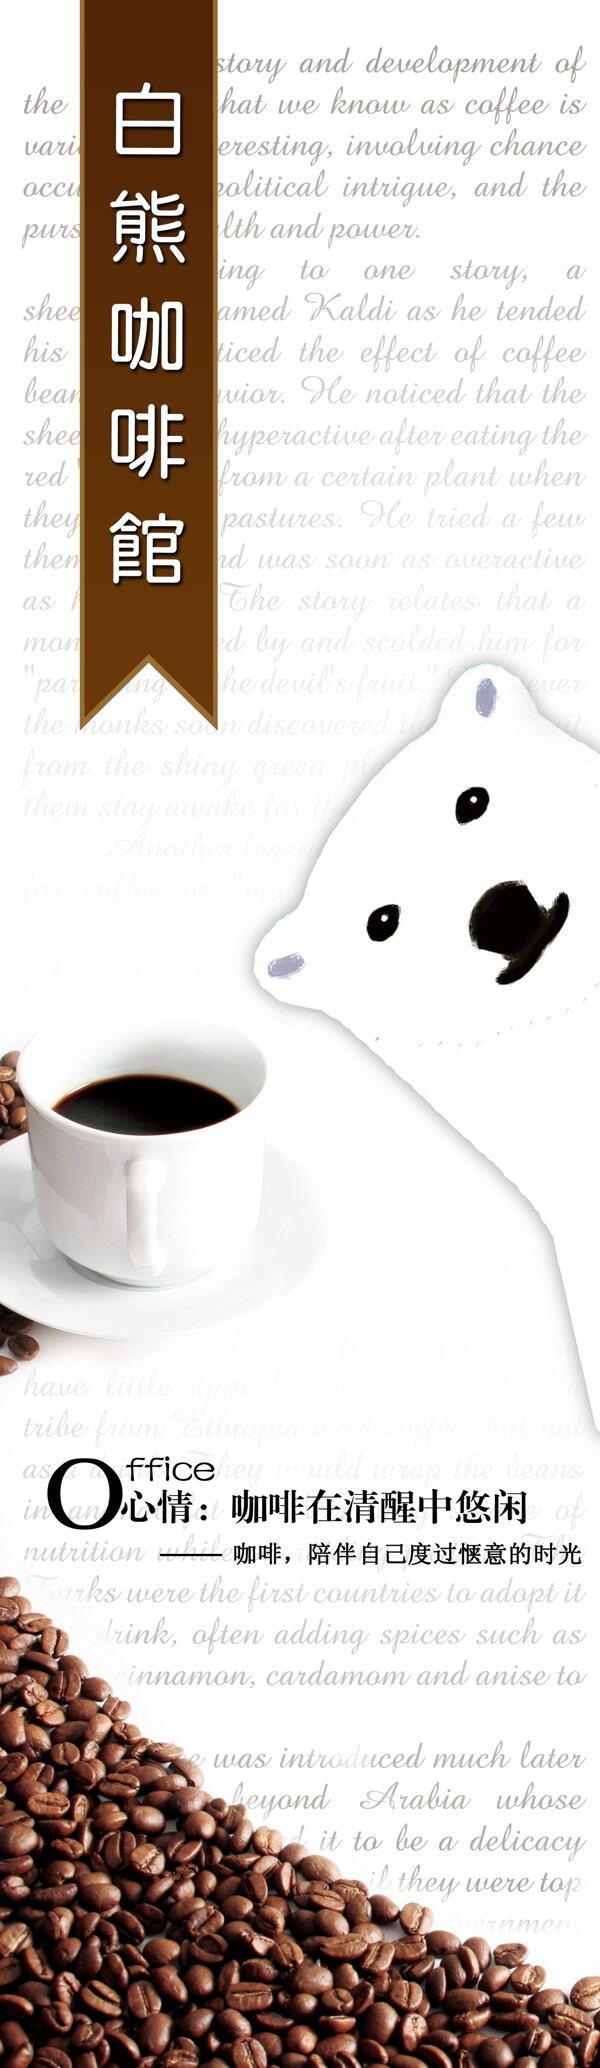 白熊咖啡图片